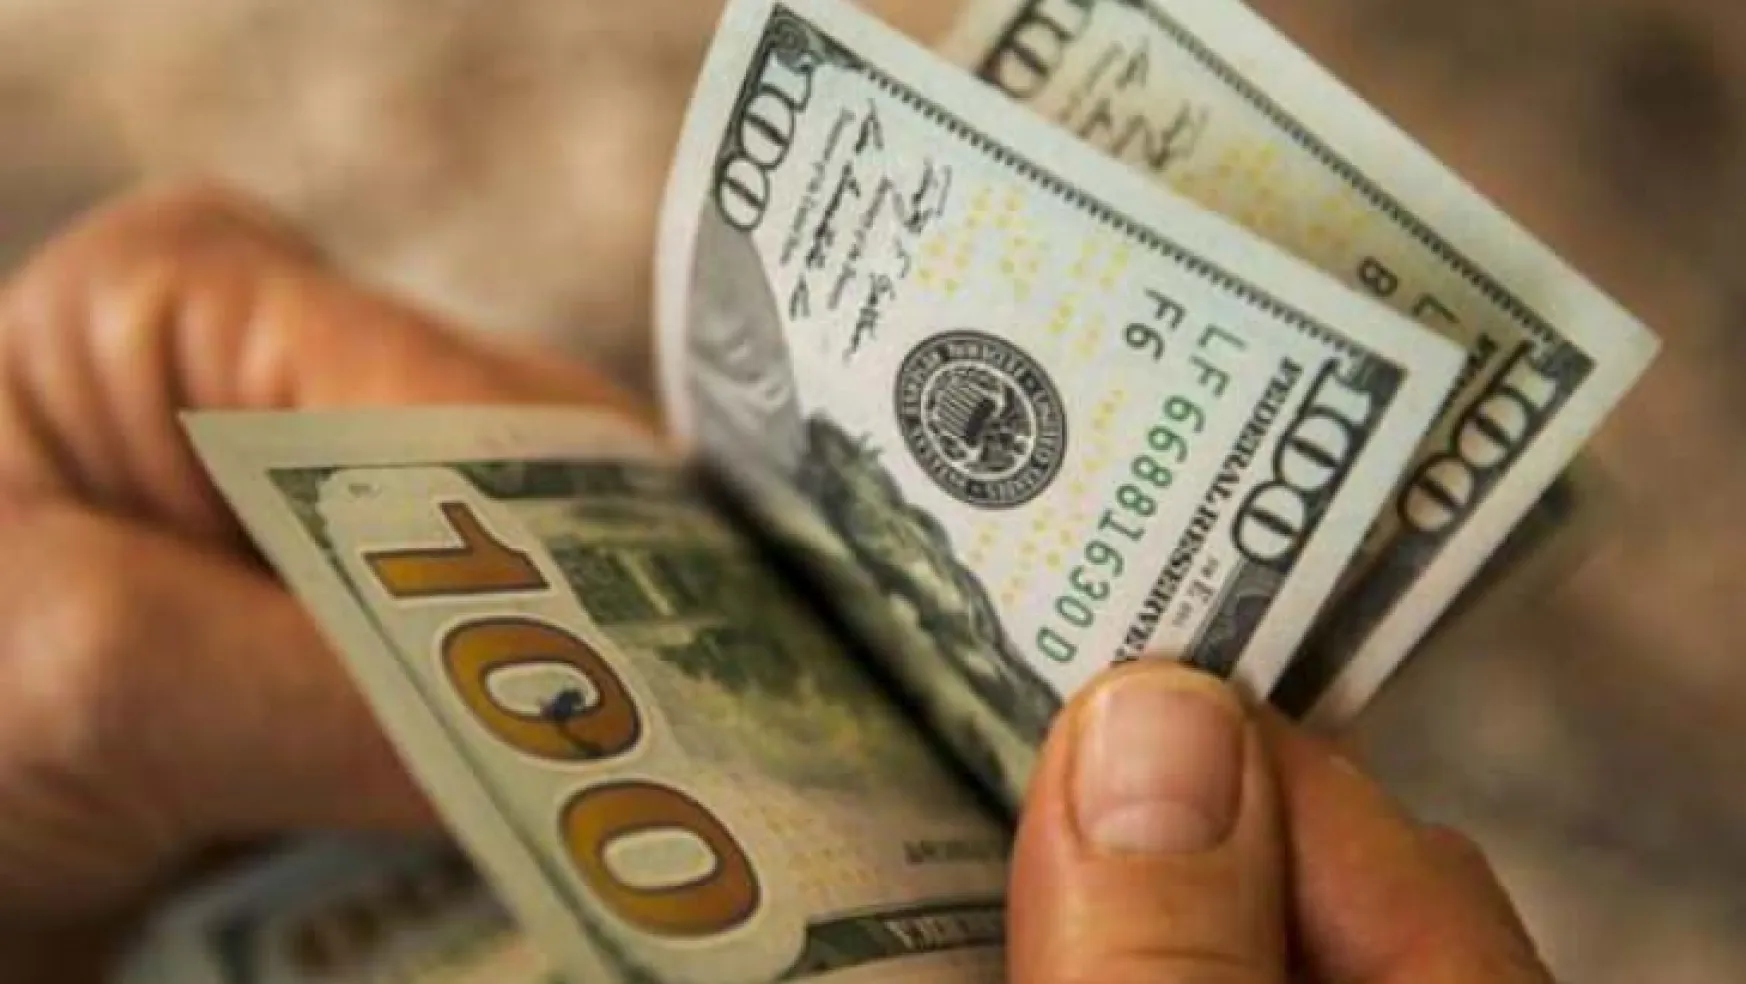 Türkiye'ye karşı kurulan dolar oyunu deşifre oldu